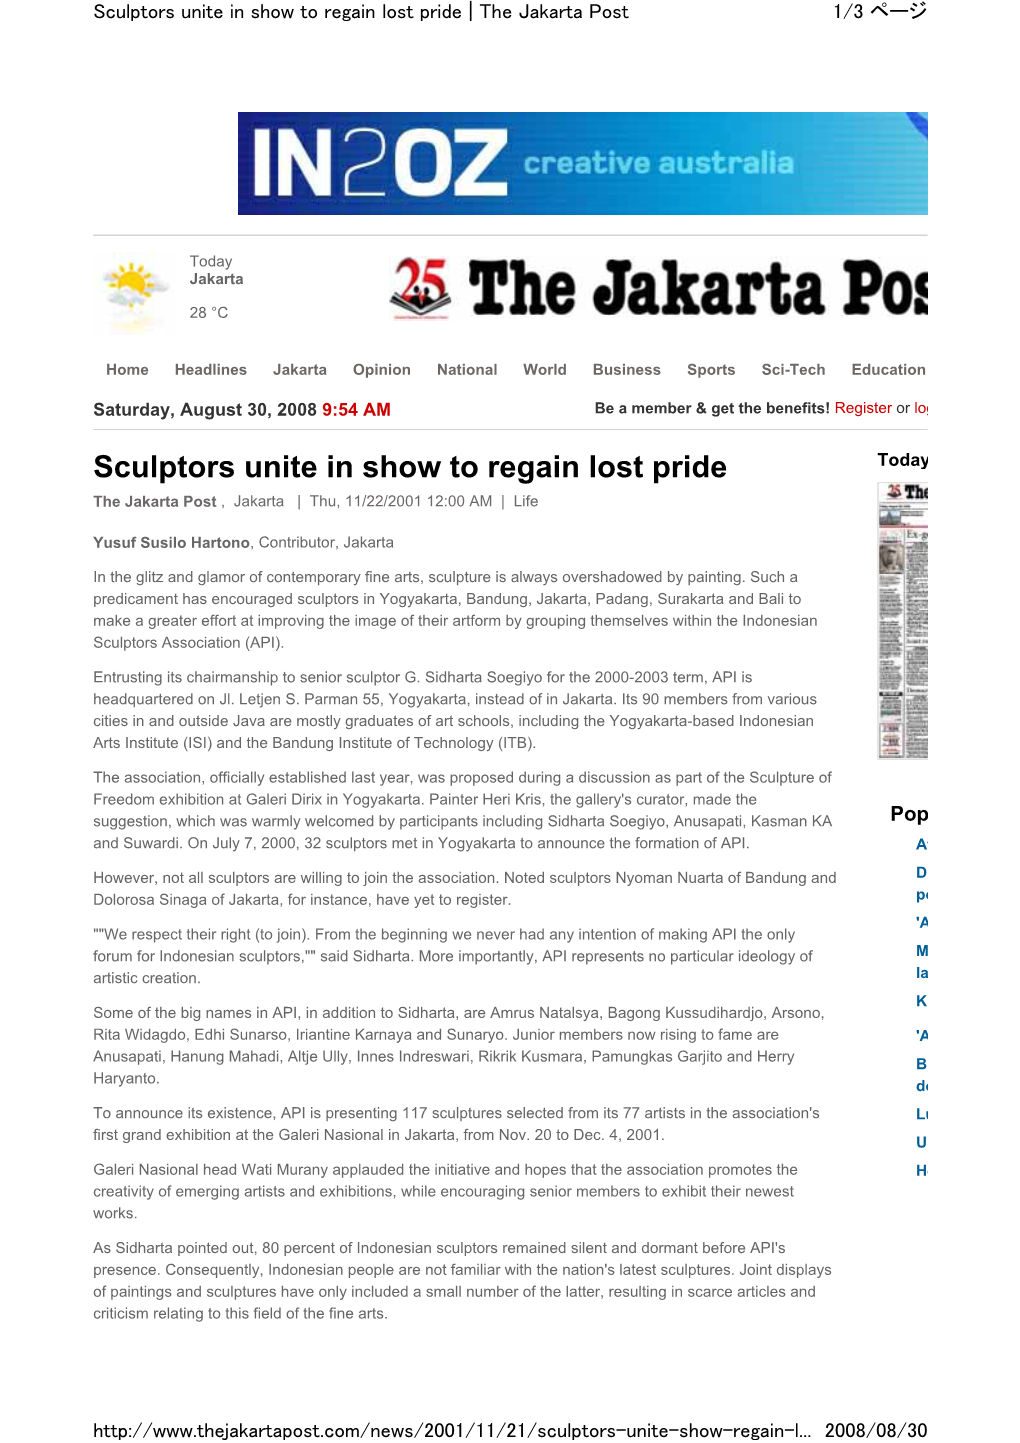 Sculptors Unite in Show to Regain Lost Pride | the Jakarta Post 1/3 ページ